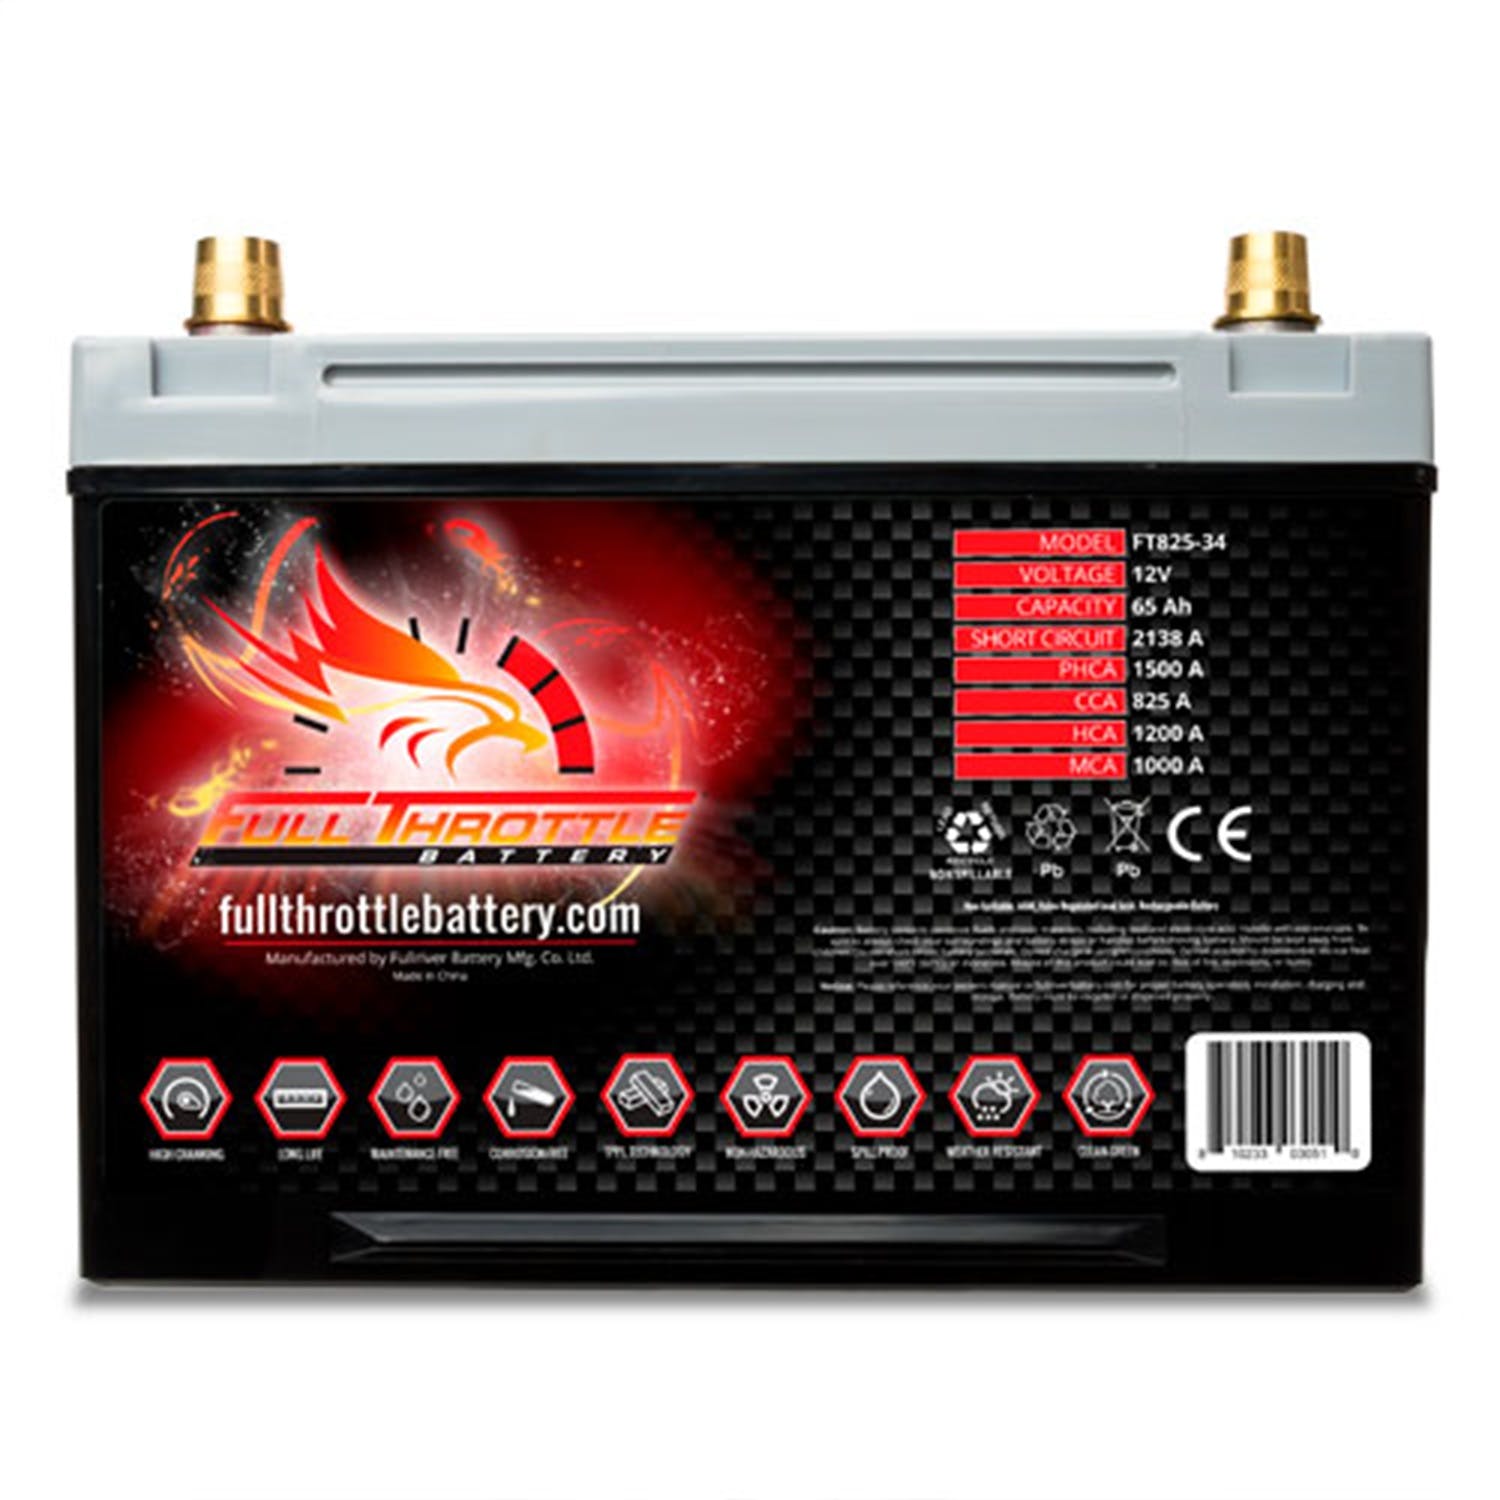 Fullriver Battery FT825-34 Full Throttle 12V Automotive Battery